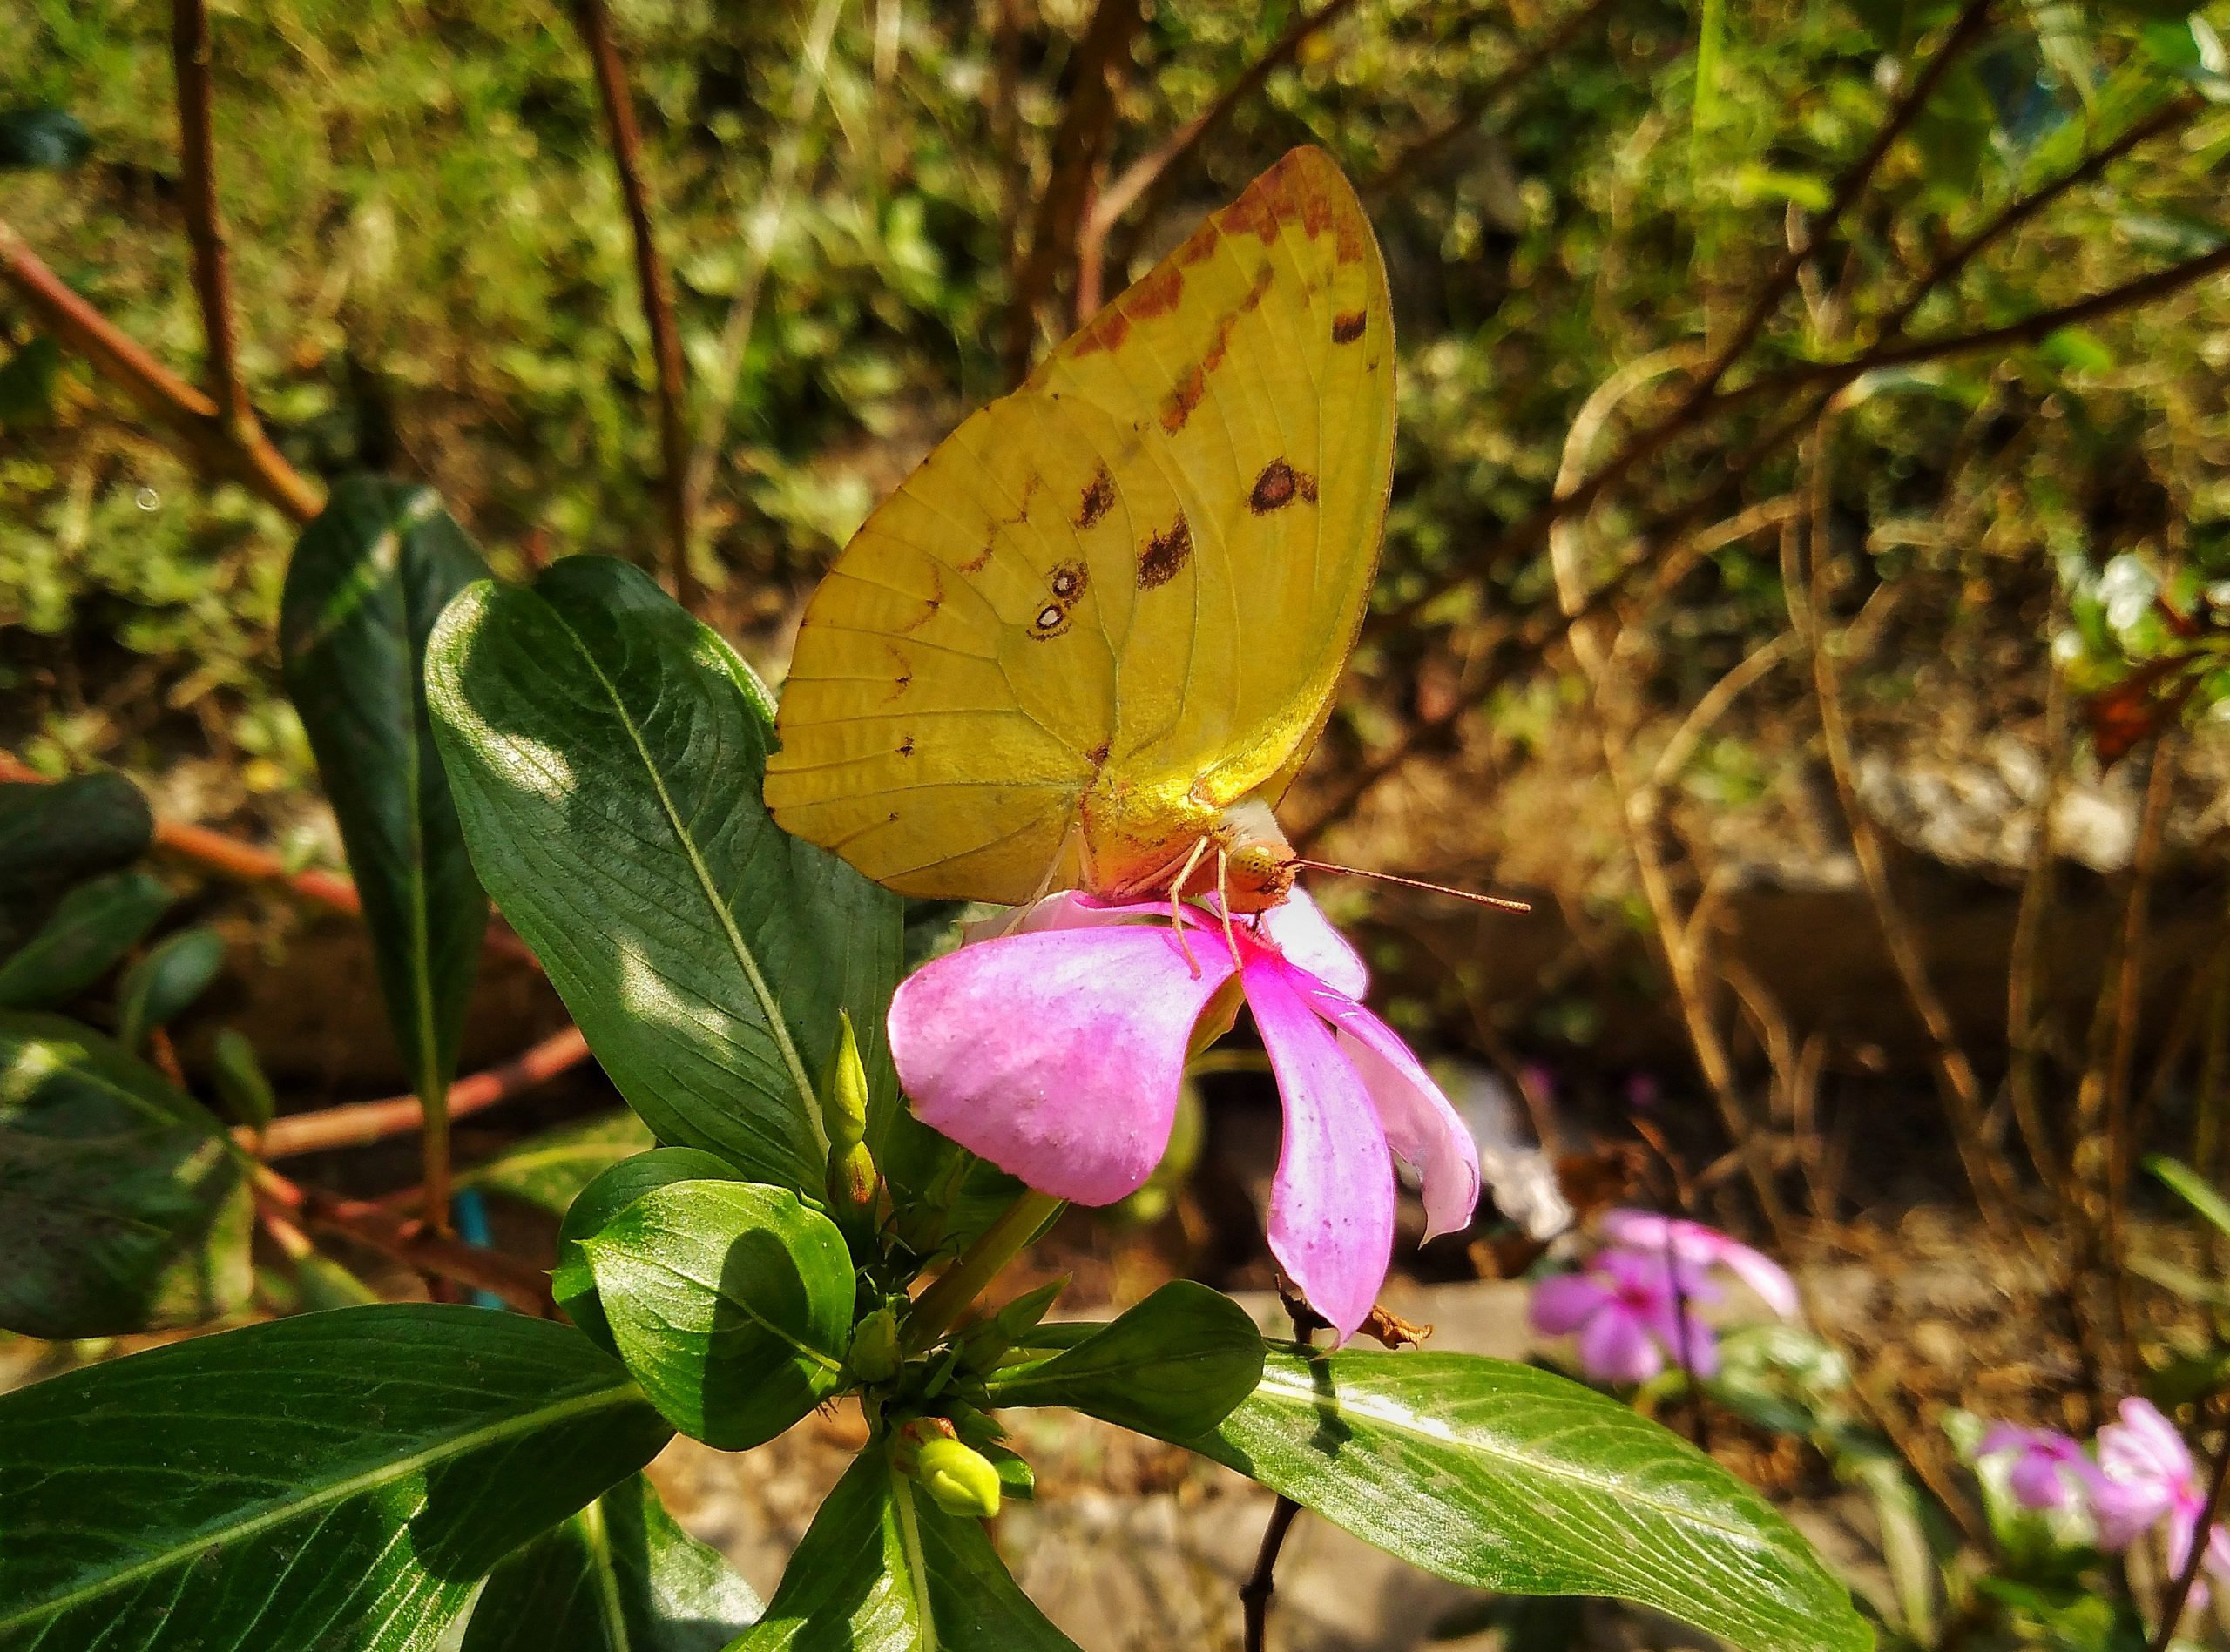 Yellow Butterfly in flower